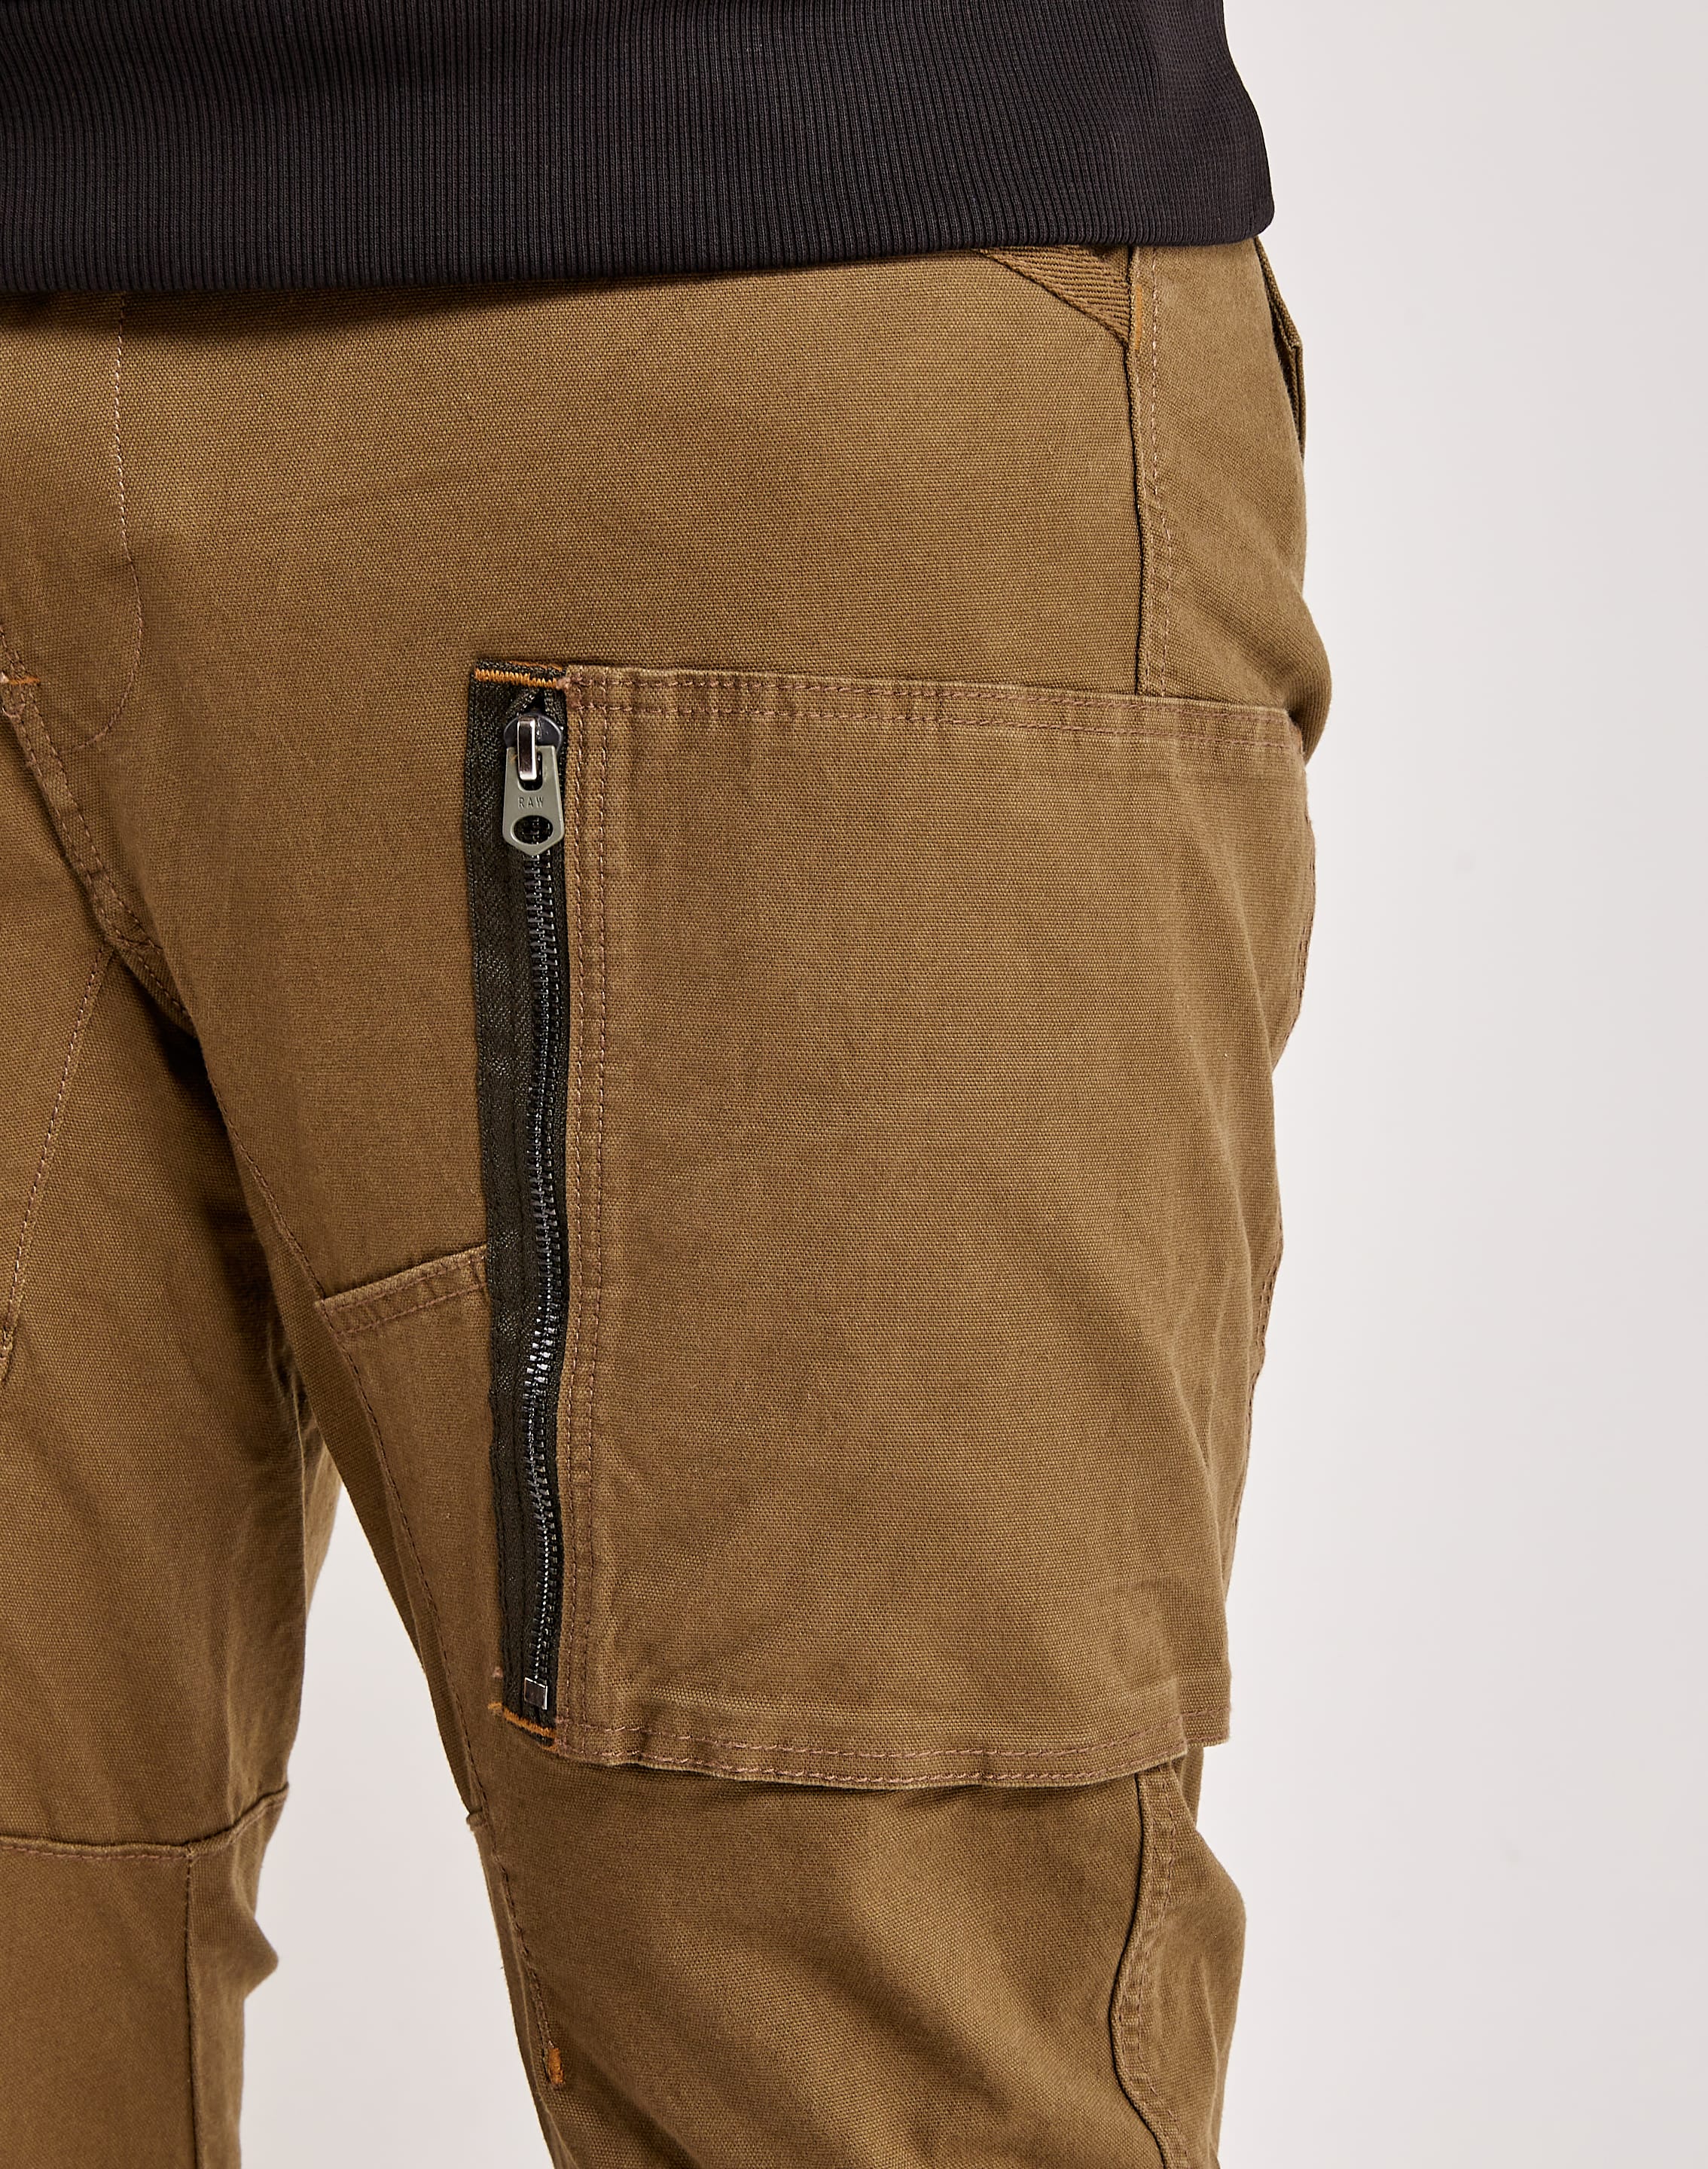 G-Star Rovic Zip 3D Regular Tapered Men's Cargo Pants Beige ...